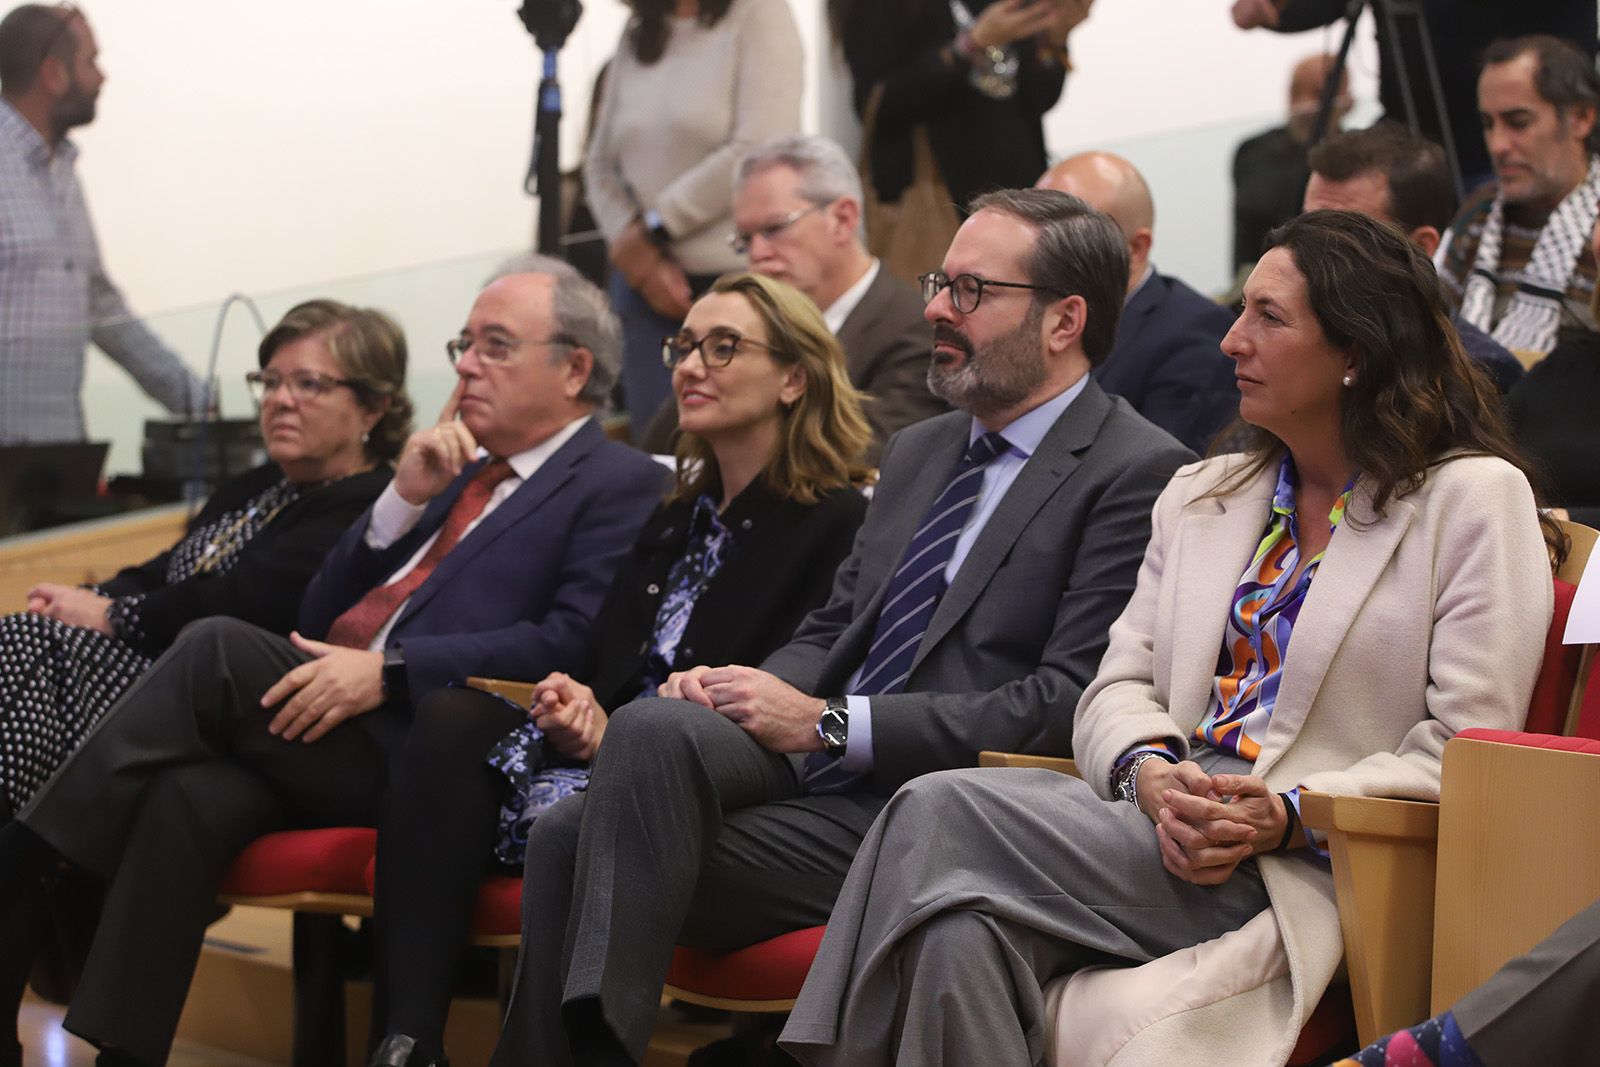 Pastelerías Roldán, Cajasol y el fiscal Fernando Santos, premiados por su labor con la discapacidad